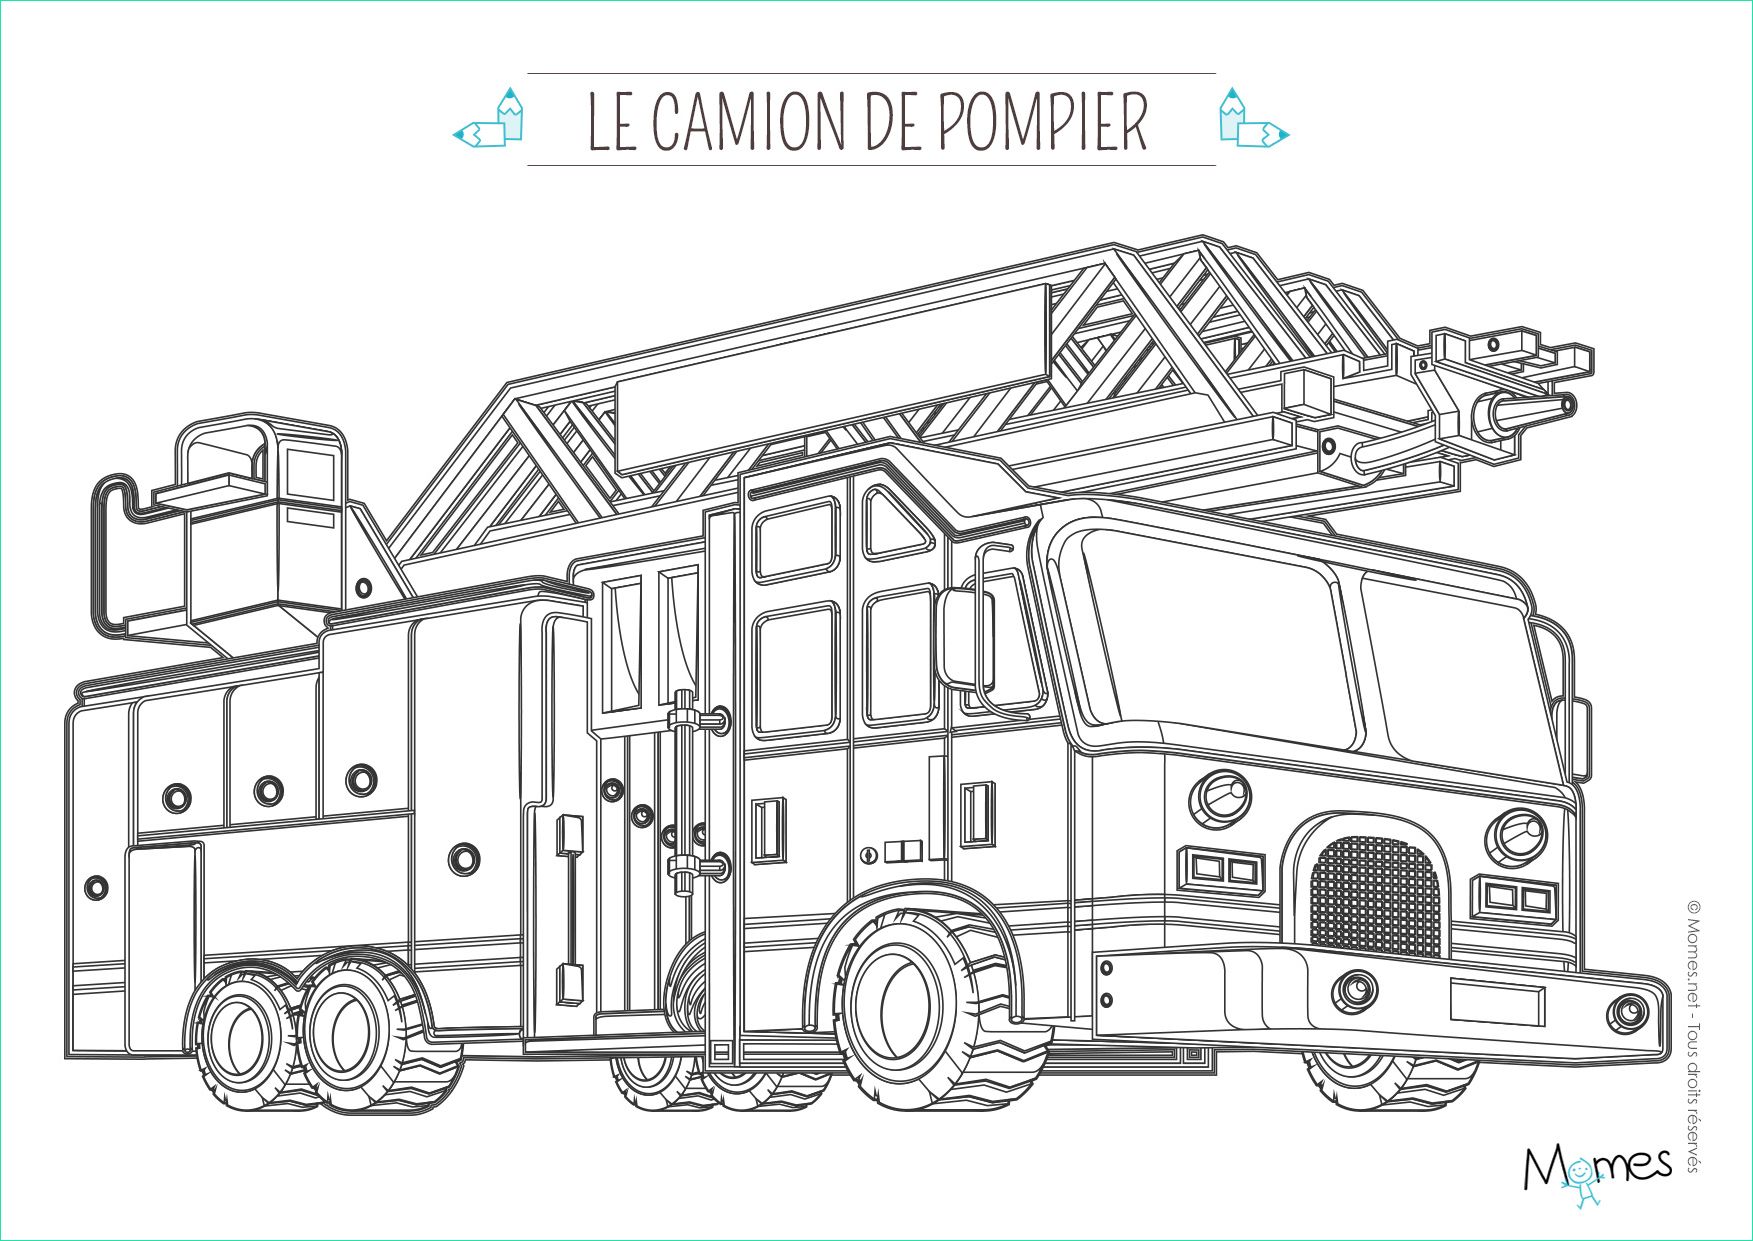 Camion De Pompier Coloriage Beau Stock 10 Beau De Dessin De Camion De Pompier S Coloriage Coloriage